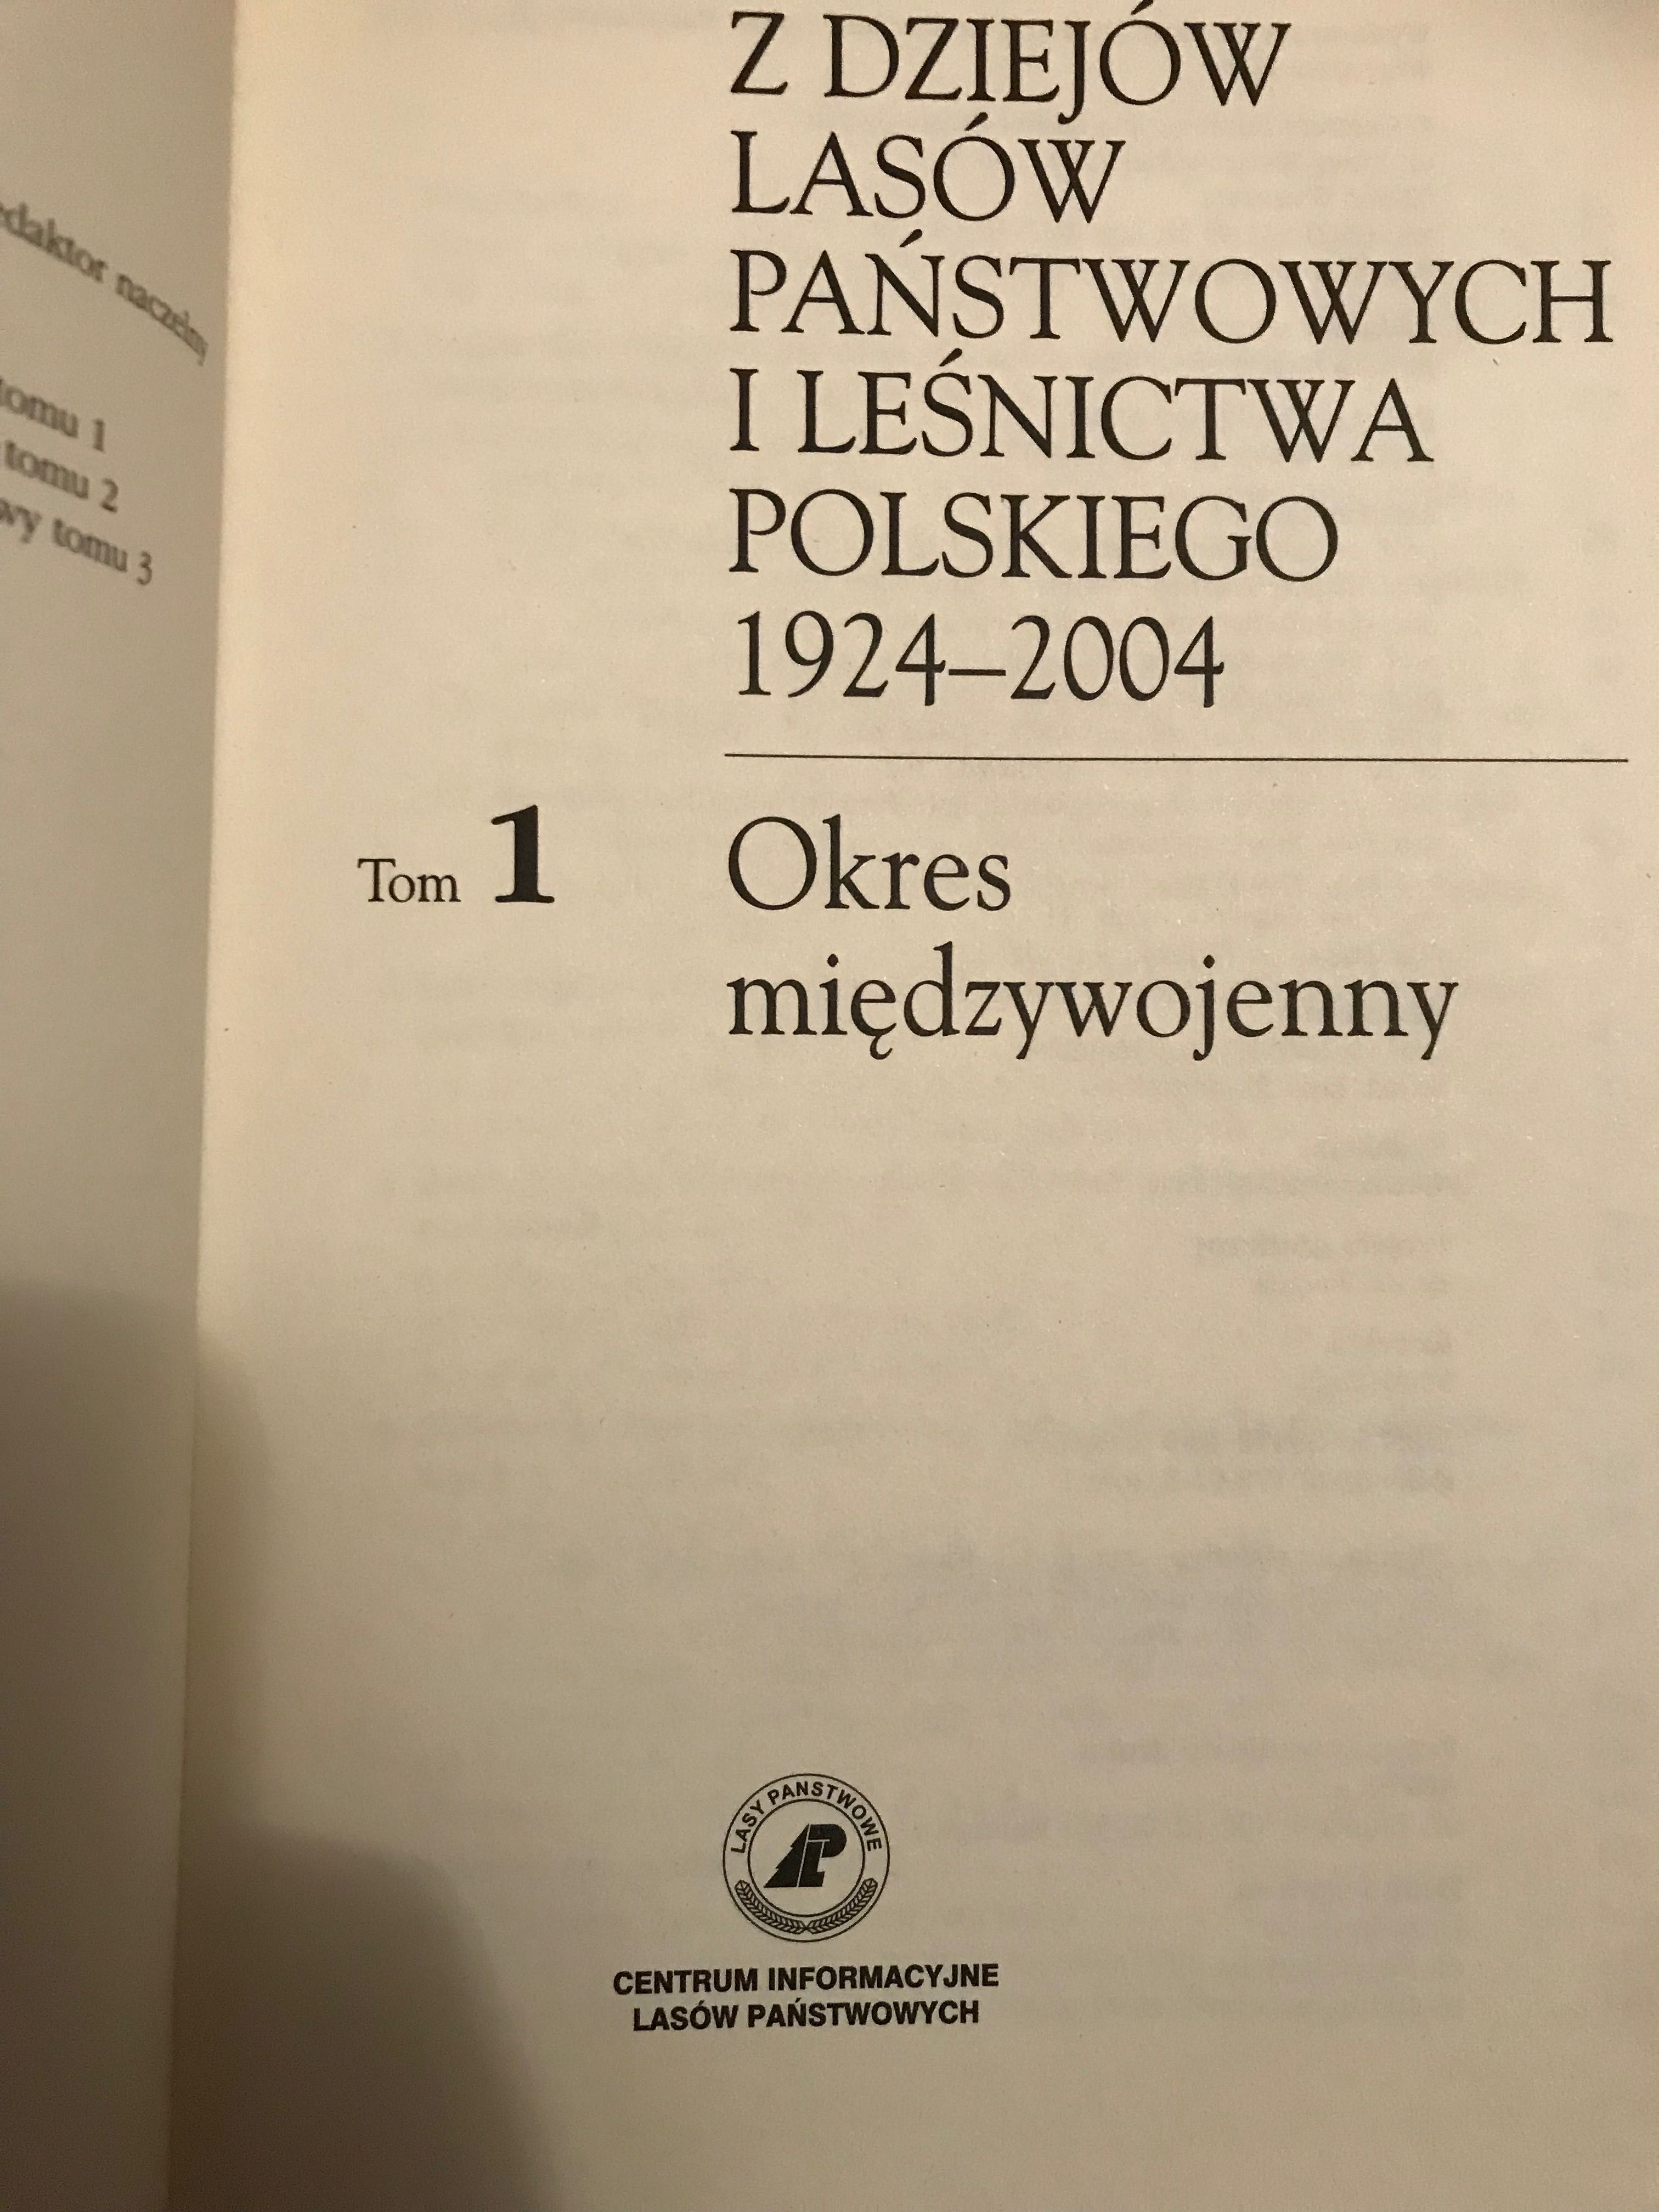 Z dziejów lasów państwowych i leśnictwa polskiego, t.1